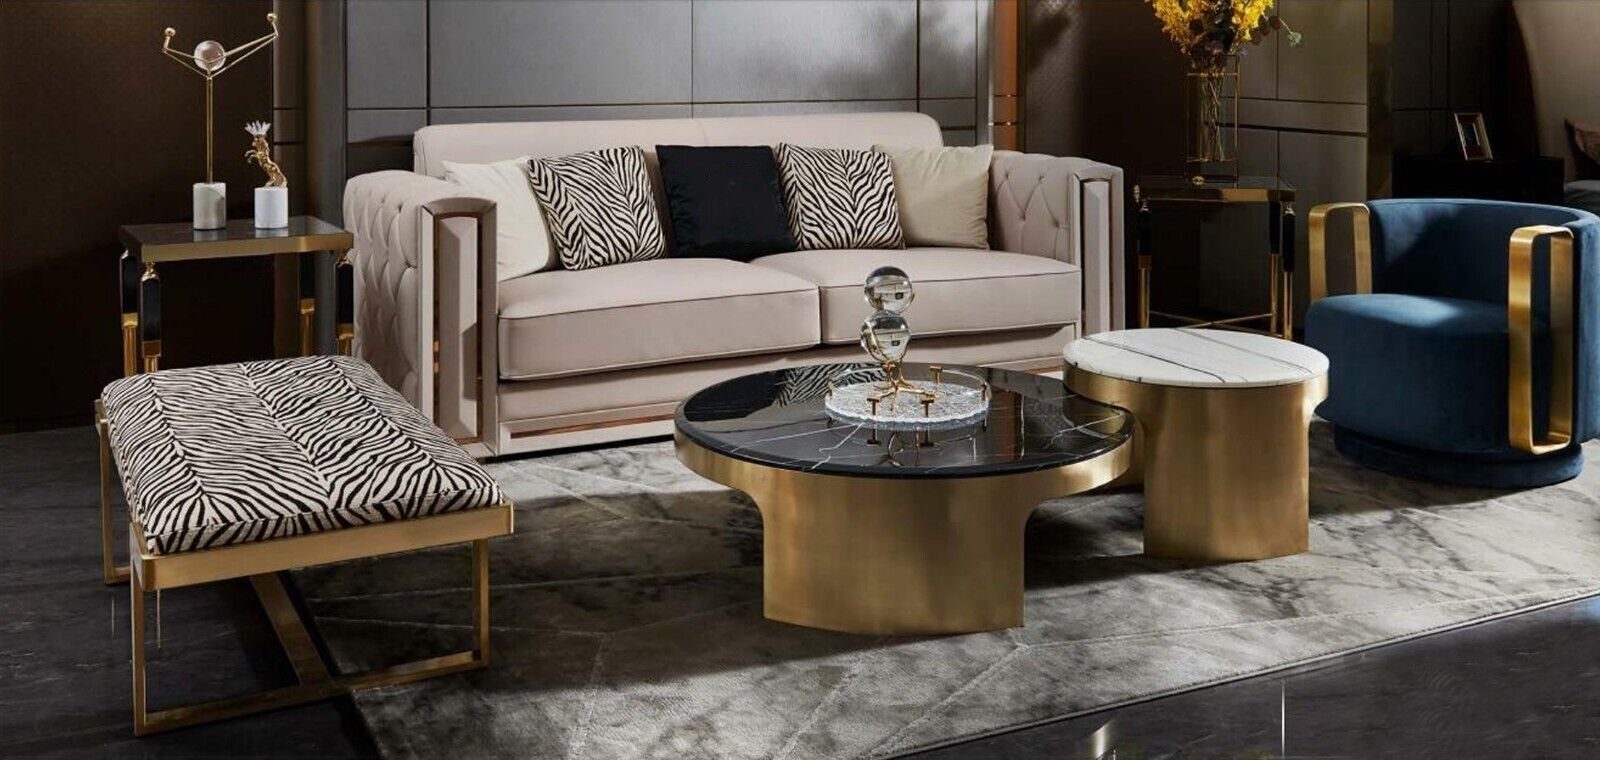 JVmoebel Couchtisch Doppelter Modern Couchtisch Luxus Wohnzimmer In Tisch Made Europe Möbel